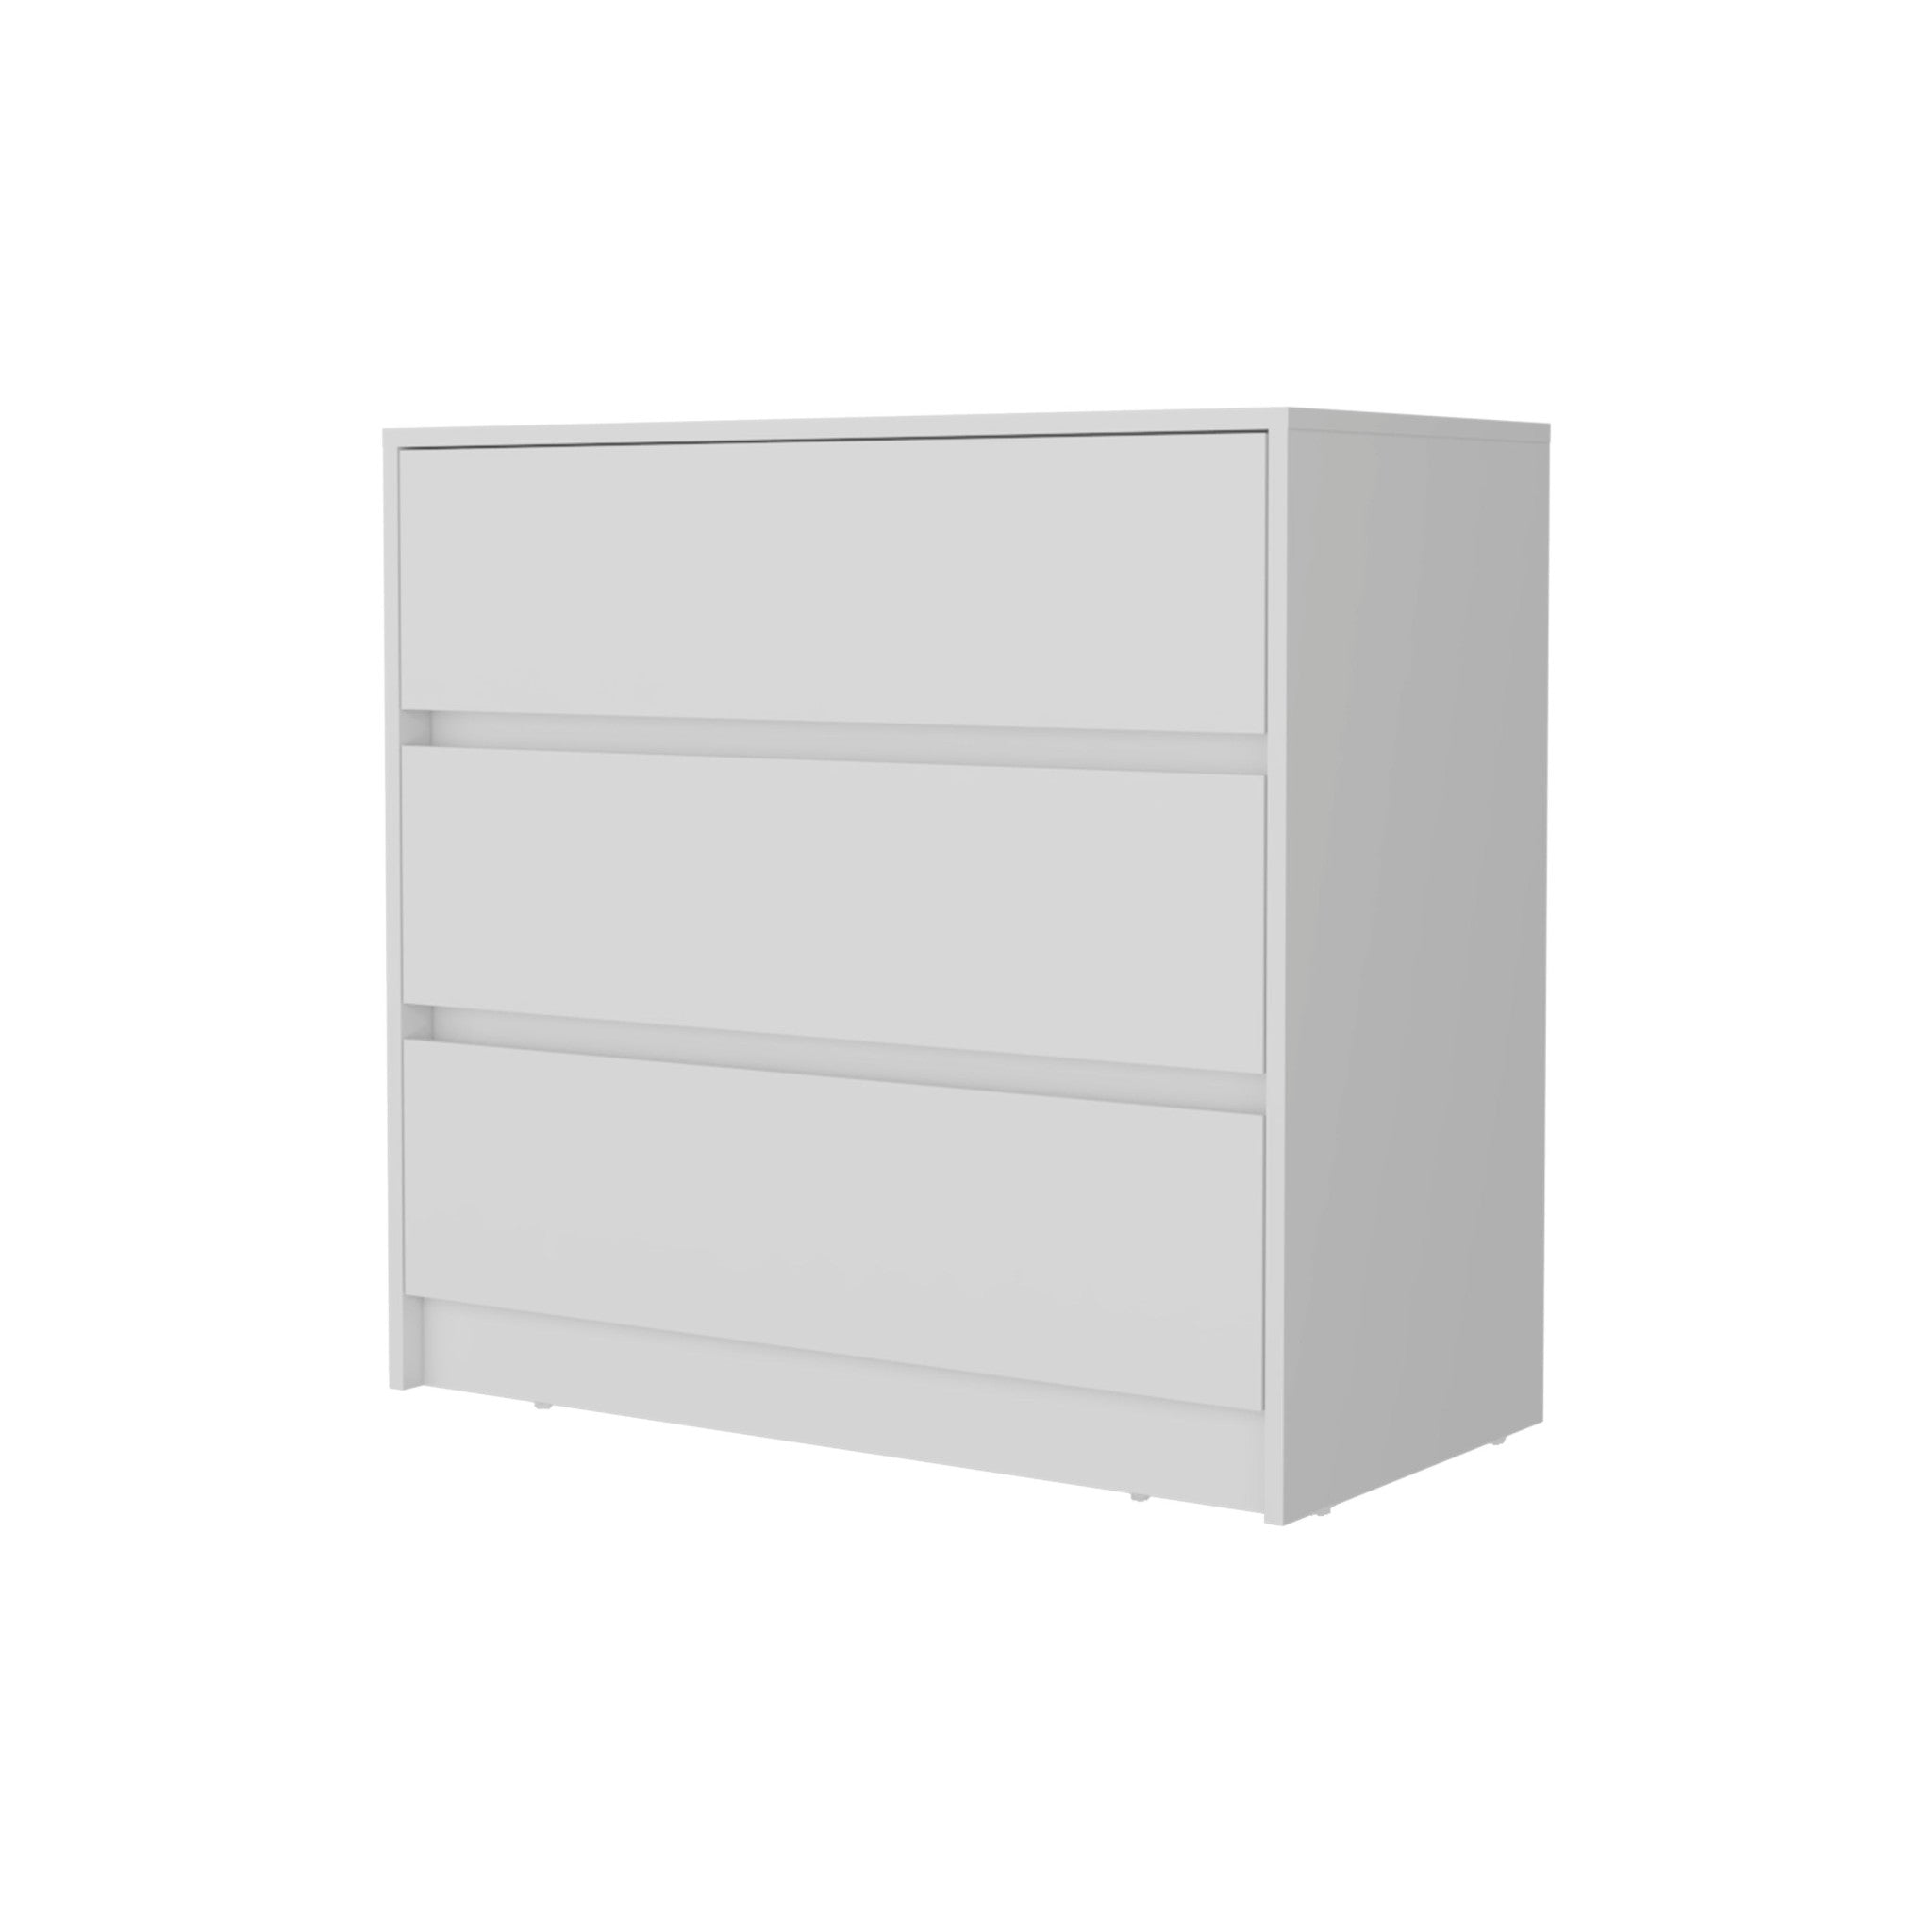 33" White Manufactured Wood Three Drawer No Handles Dresser